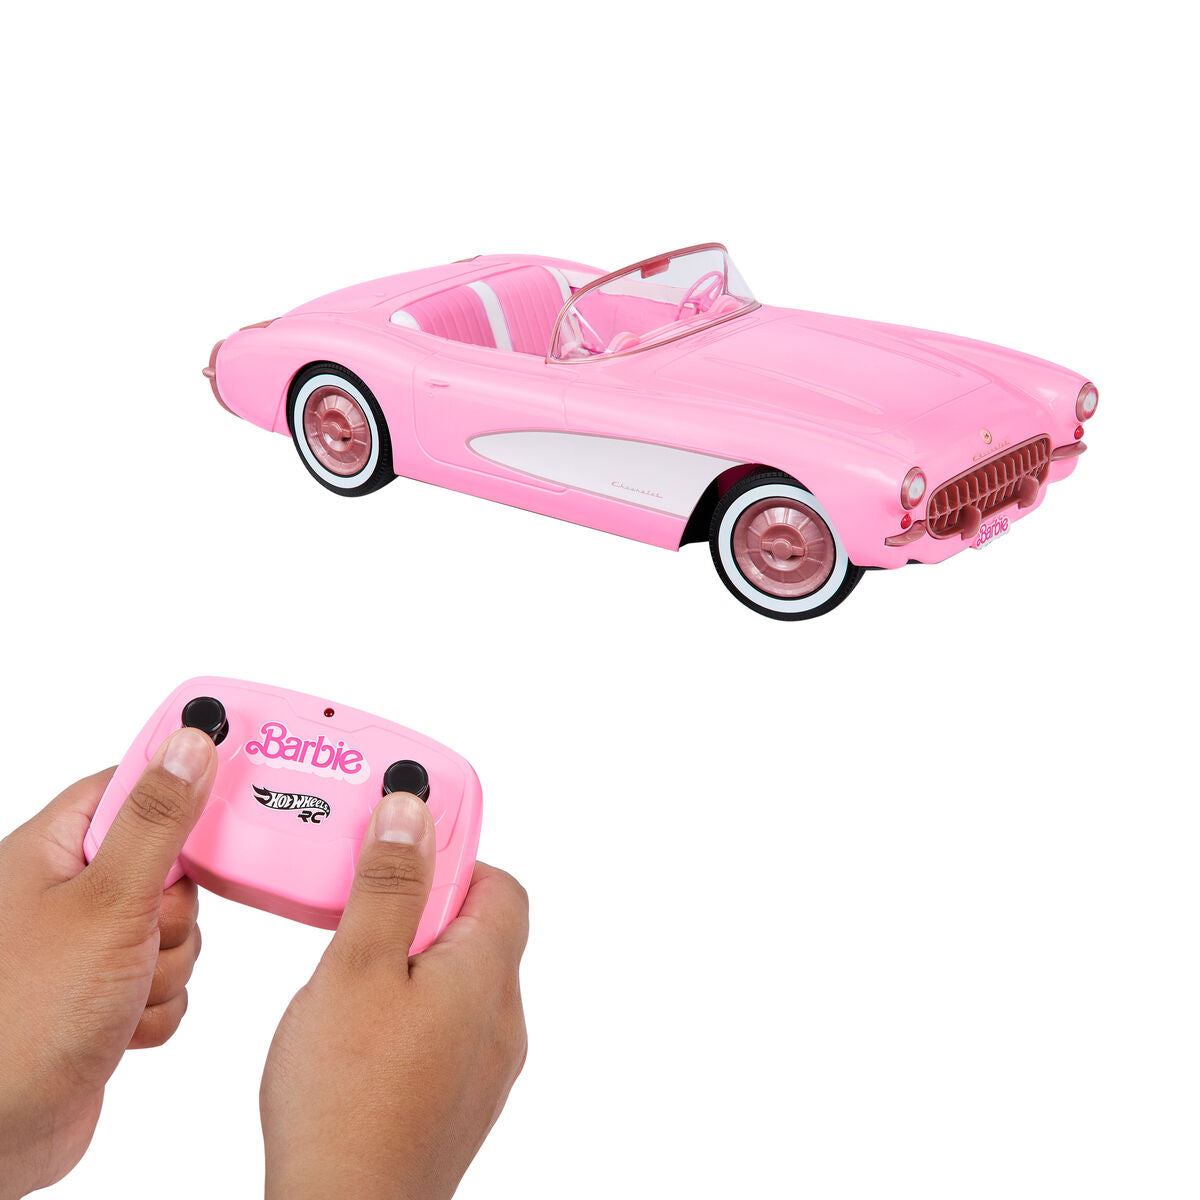 Машинка Barbie The Movie Hot Wheels RC Corvette